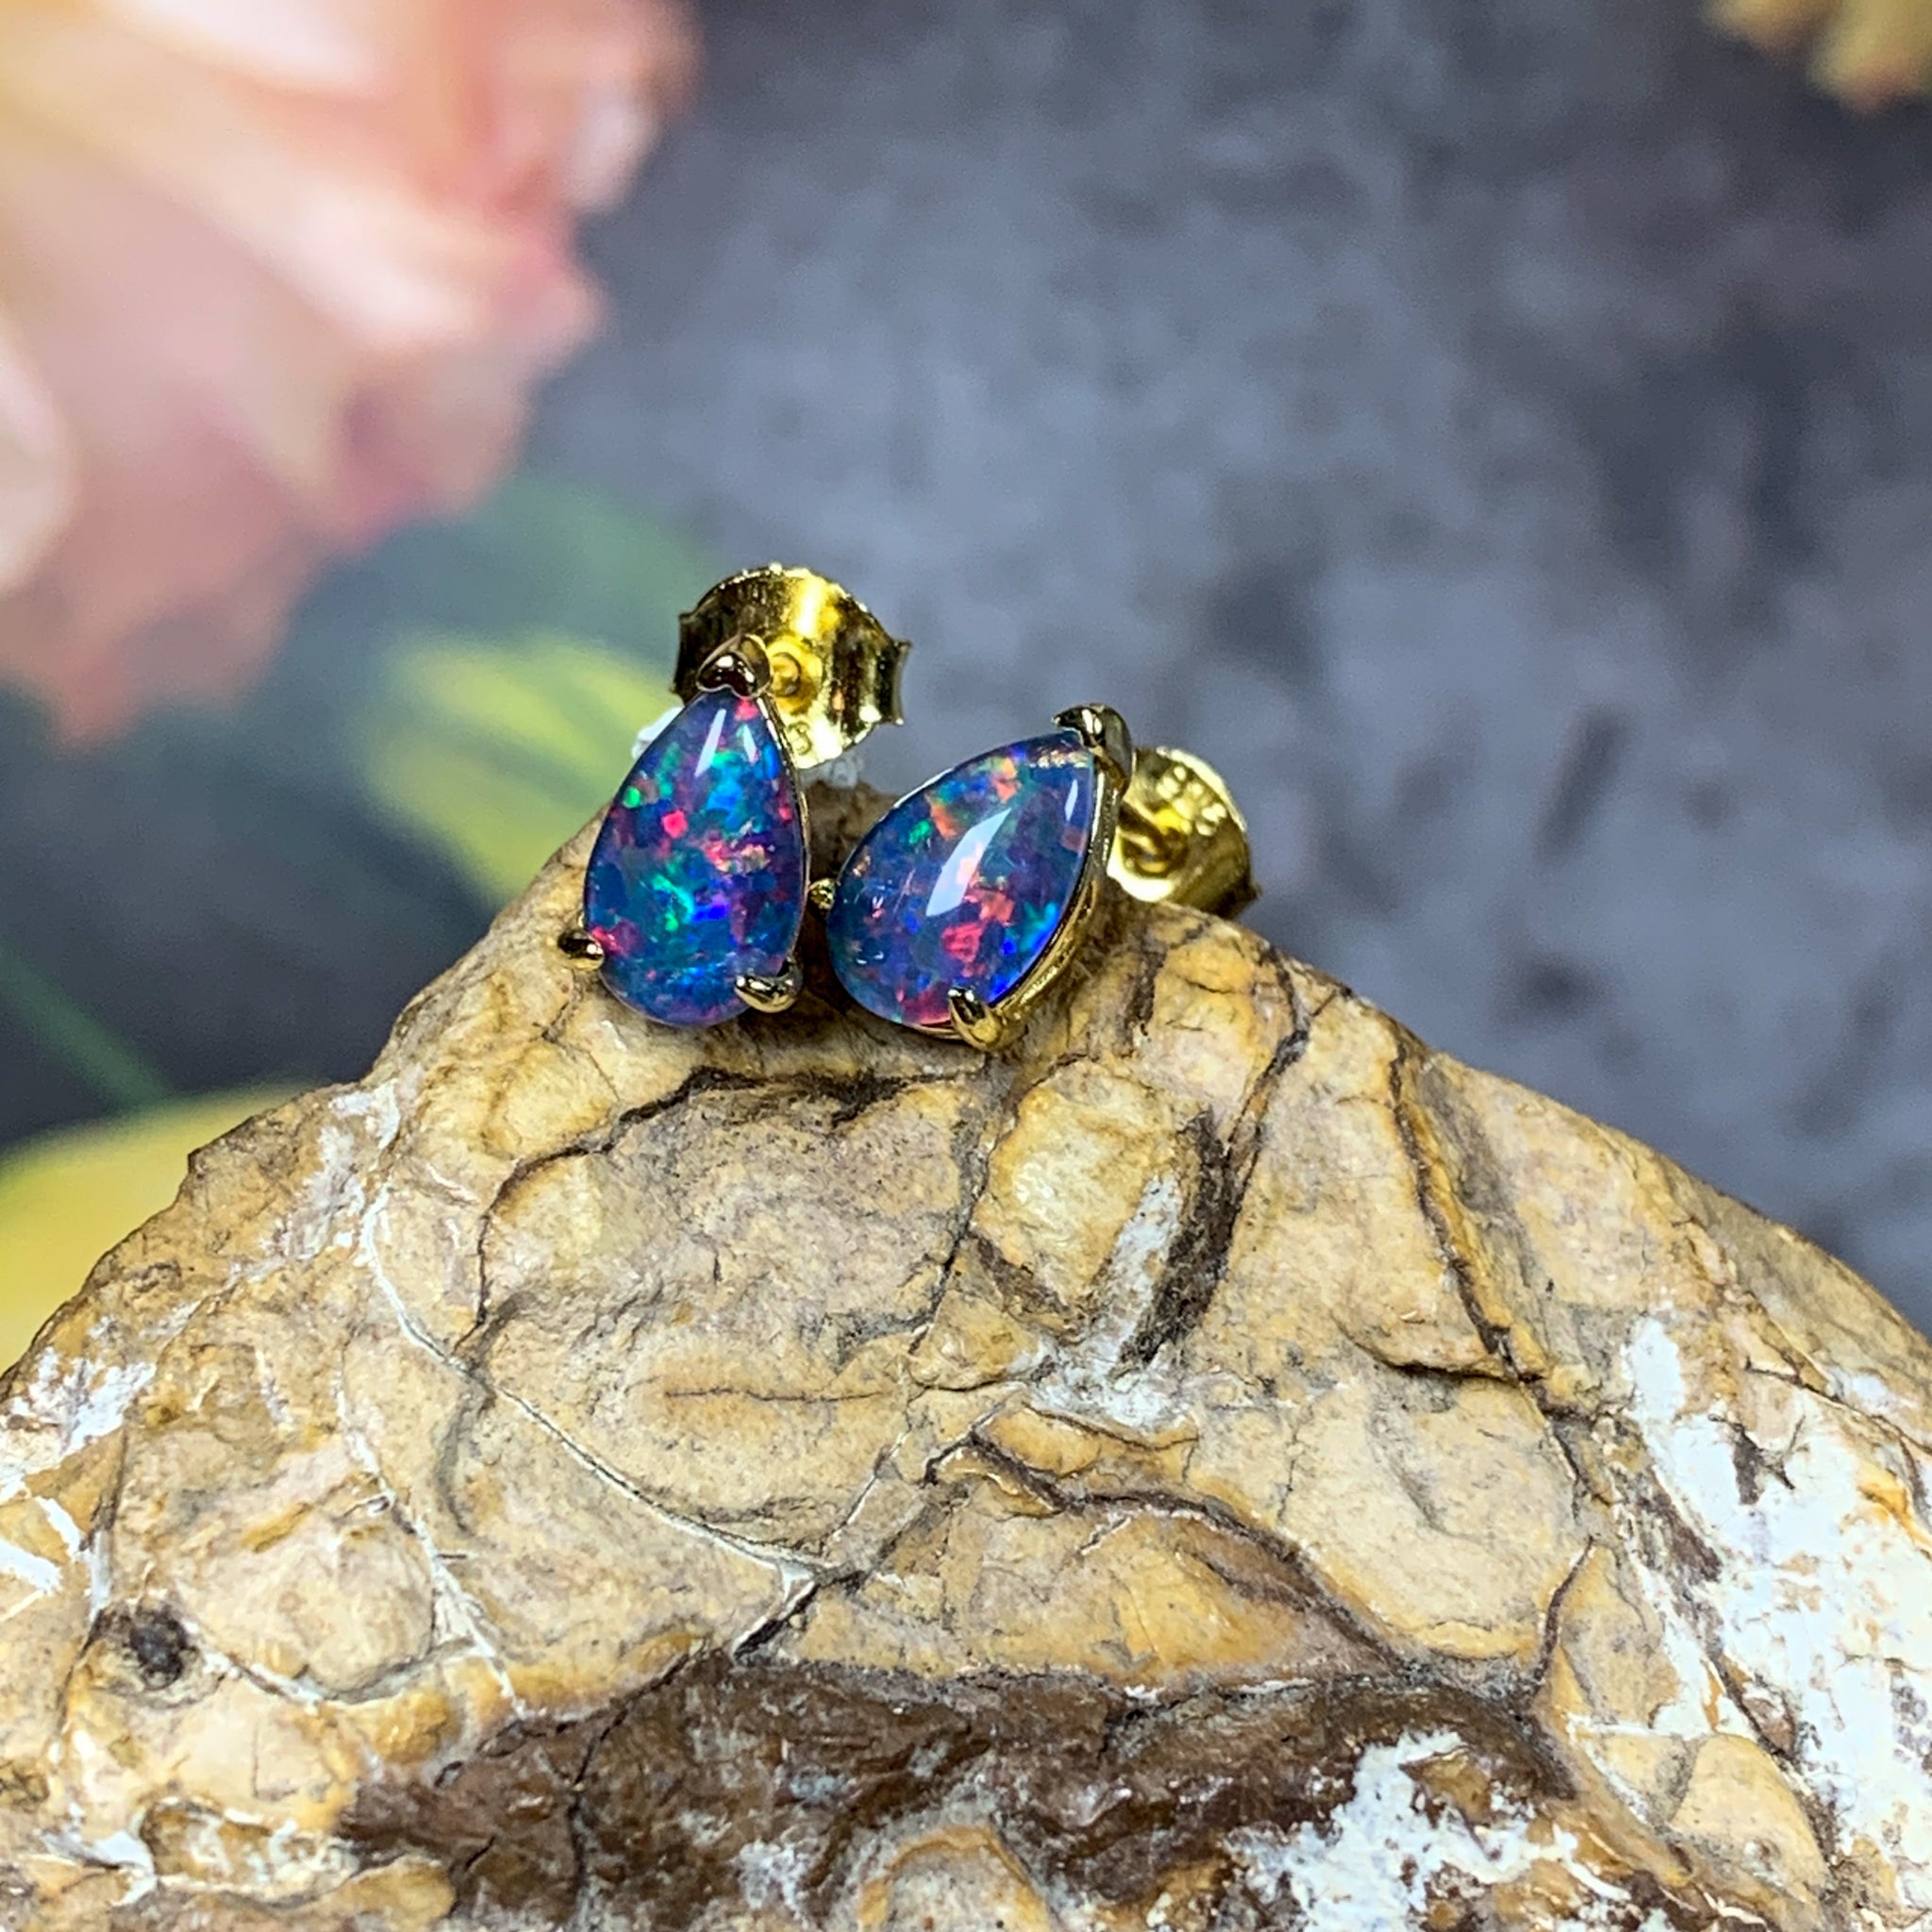 Gold plated 8x5mm pear shape Opal triplet studs - Masterpiece Jewellery Opal & Gems Sydney Australia | Online Shop